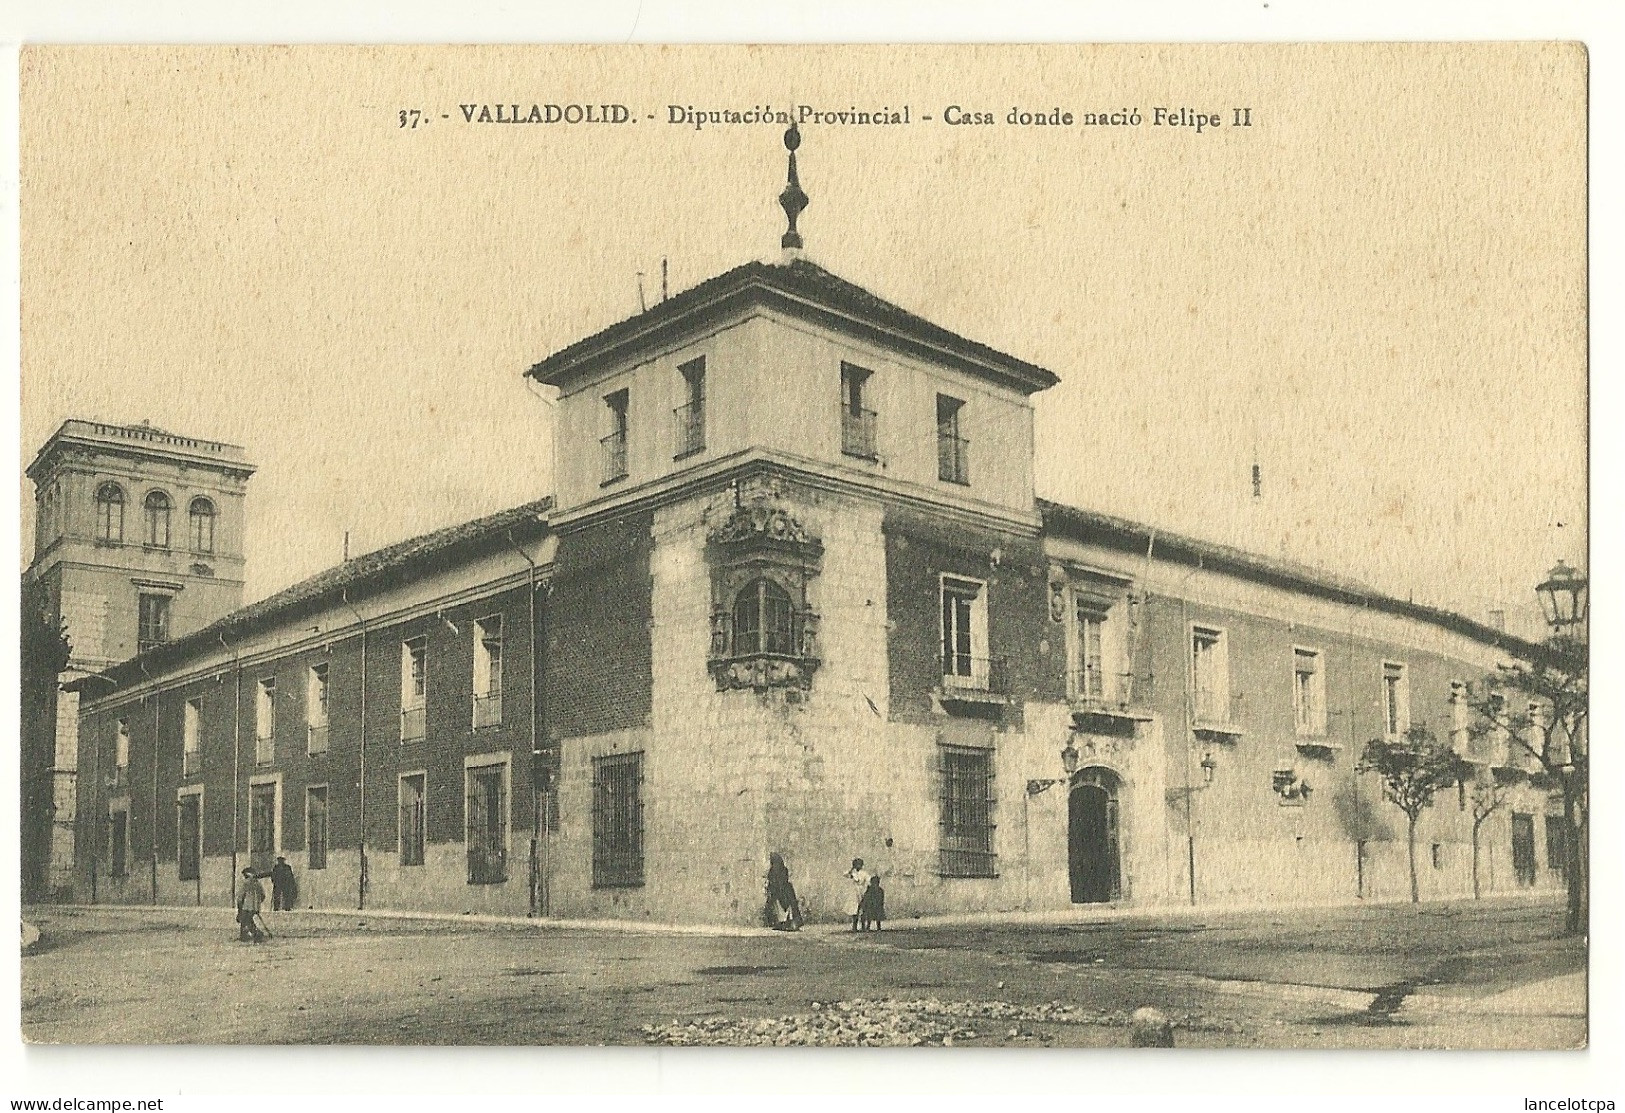 VALLADOLID / DIPUTACION PROVINCIAL - CASA DONDE NACIO FELIPE II - Valladolid